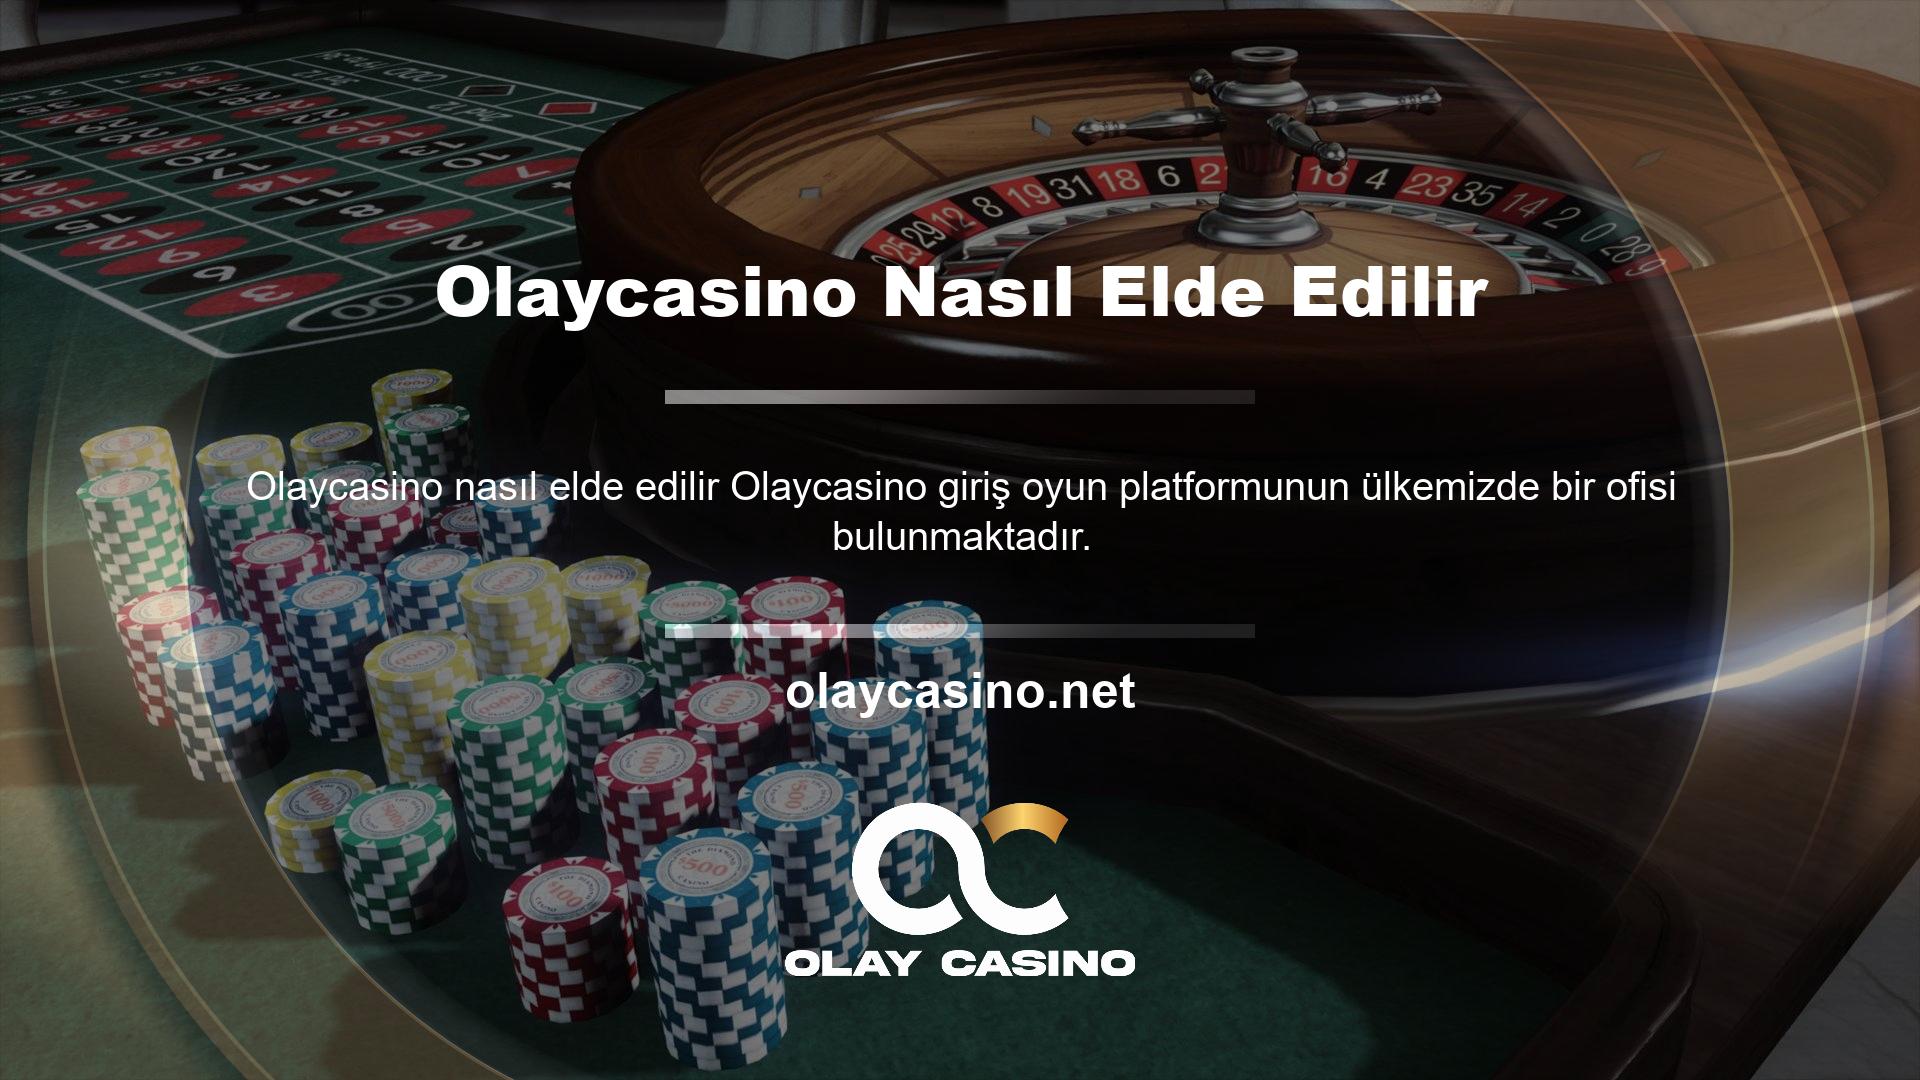 Ülkemizde Bilişim Komisyonu tarafından oluşturulan yasalar, Türkiye'de casino sitelerine ve casino içeriklerine izin verilmediğini belirtmektedir